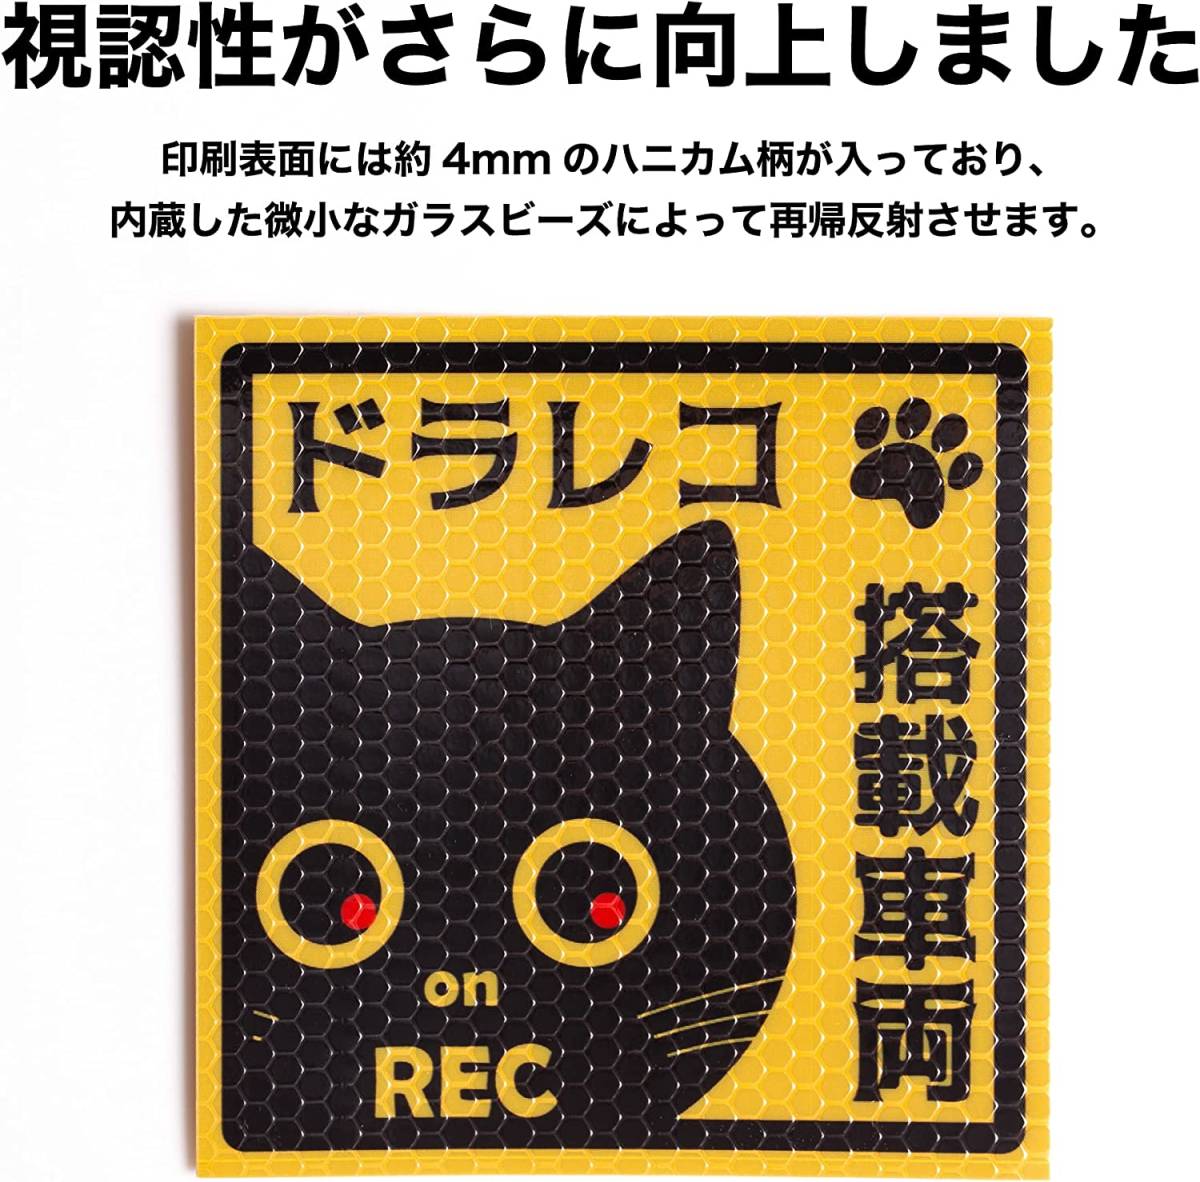 ドライブレコーダー 搭載 反射 車 ステッカー 猫 煽り運転防止ステッカー ドラレコ 正方形_画像2